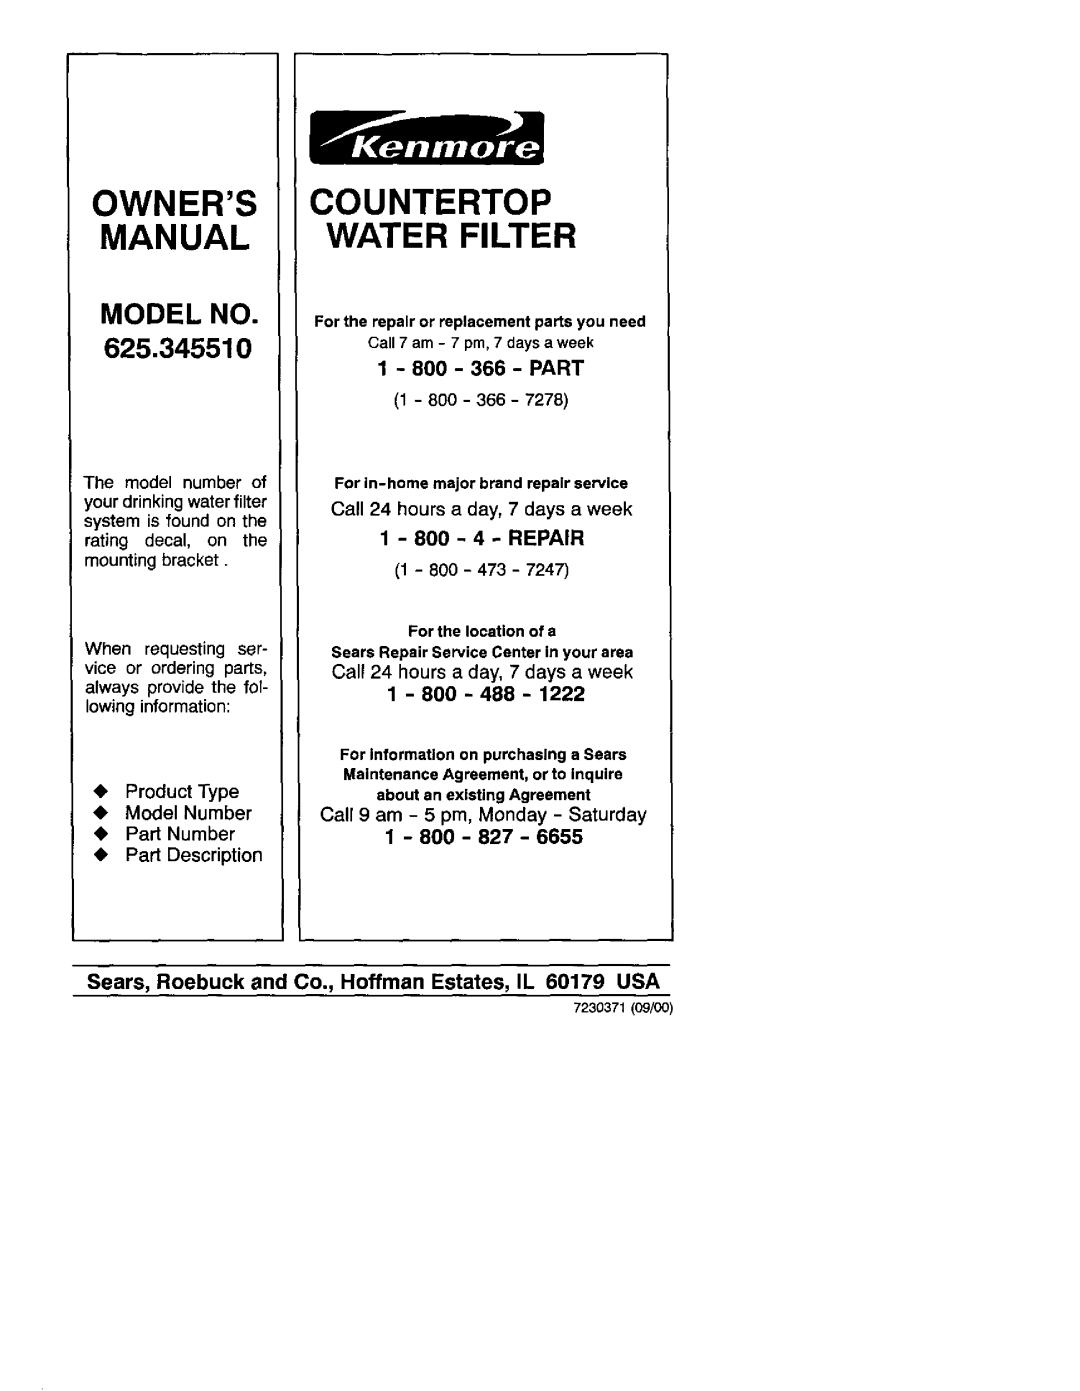 Kenmore 625.34551 Countertop Water Filter, Sears, Roebuck and, 1 - 800 - 366 - PART, 1 - 800 - 4 - REPAIR, Model No 